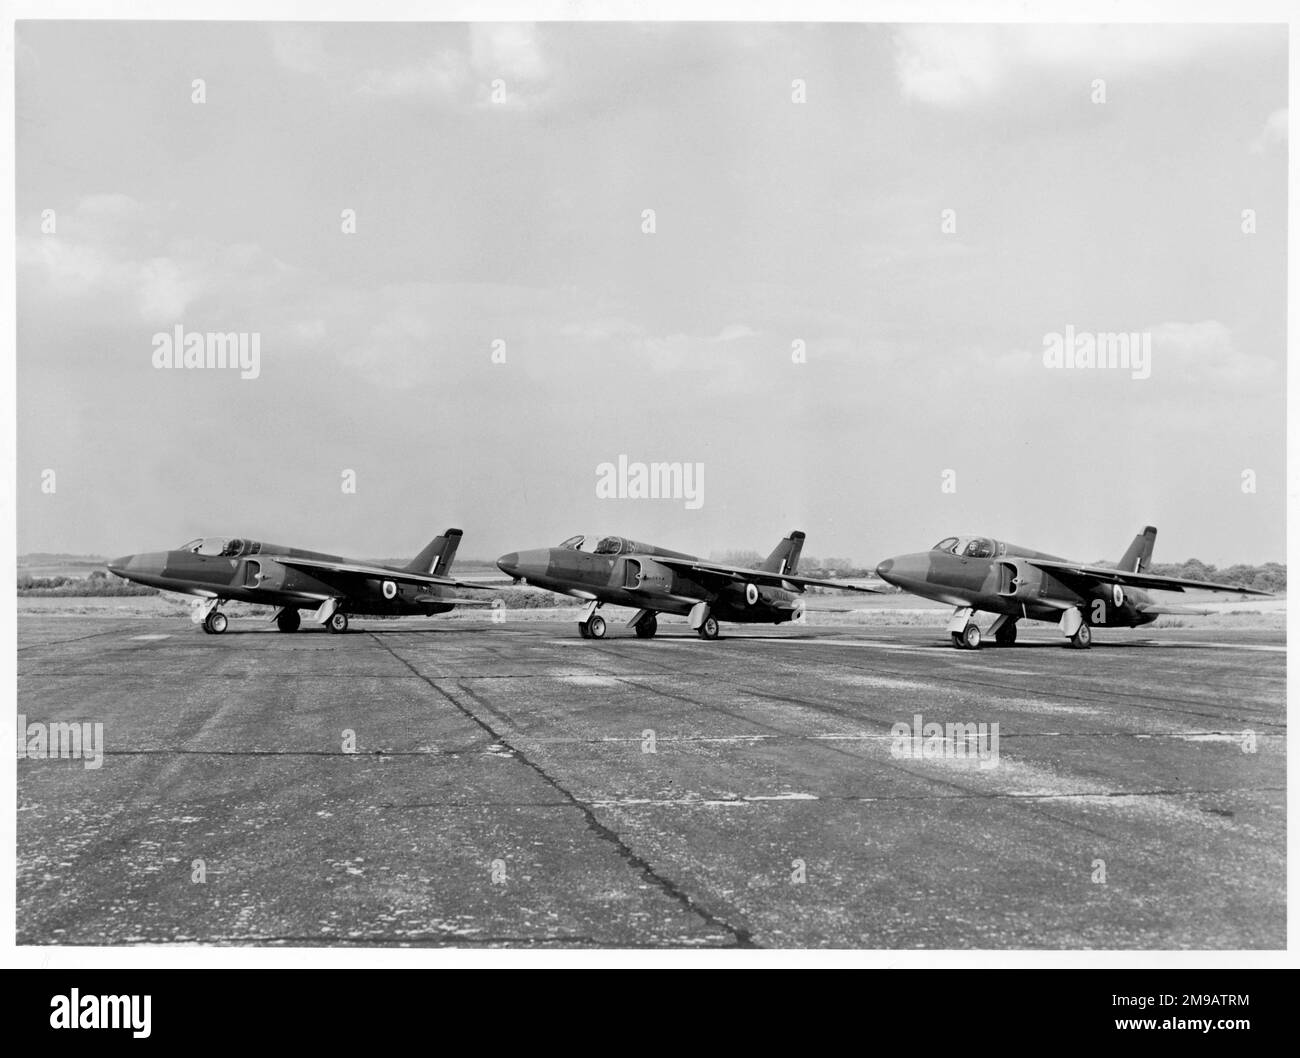 Folland Gnat F.1 - XK724 (msn FL2), XK739 (msn FL3) e XK740 (msn FL4), presso il campo aereo di Chilbolton nell'Hampshire il 6 maggio 1957 Foto Stock